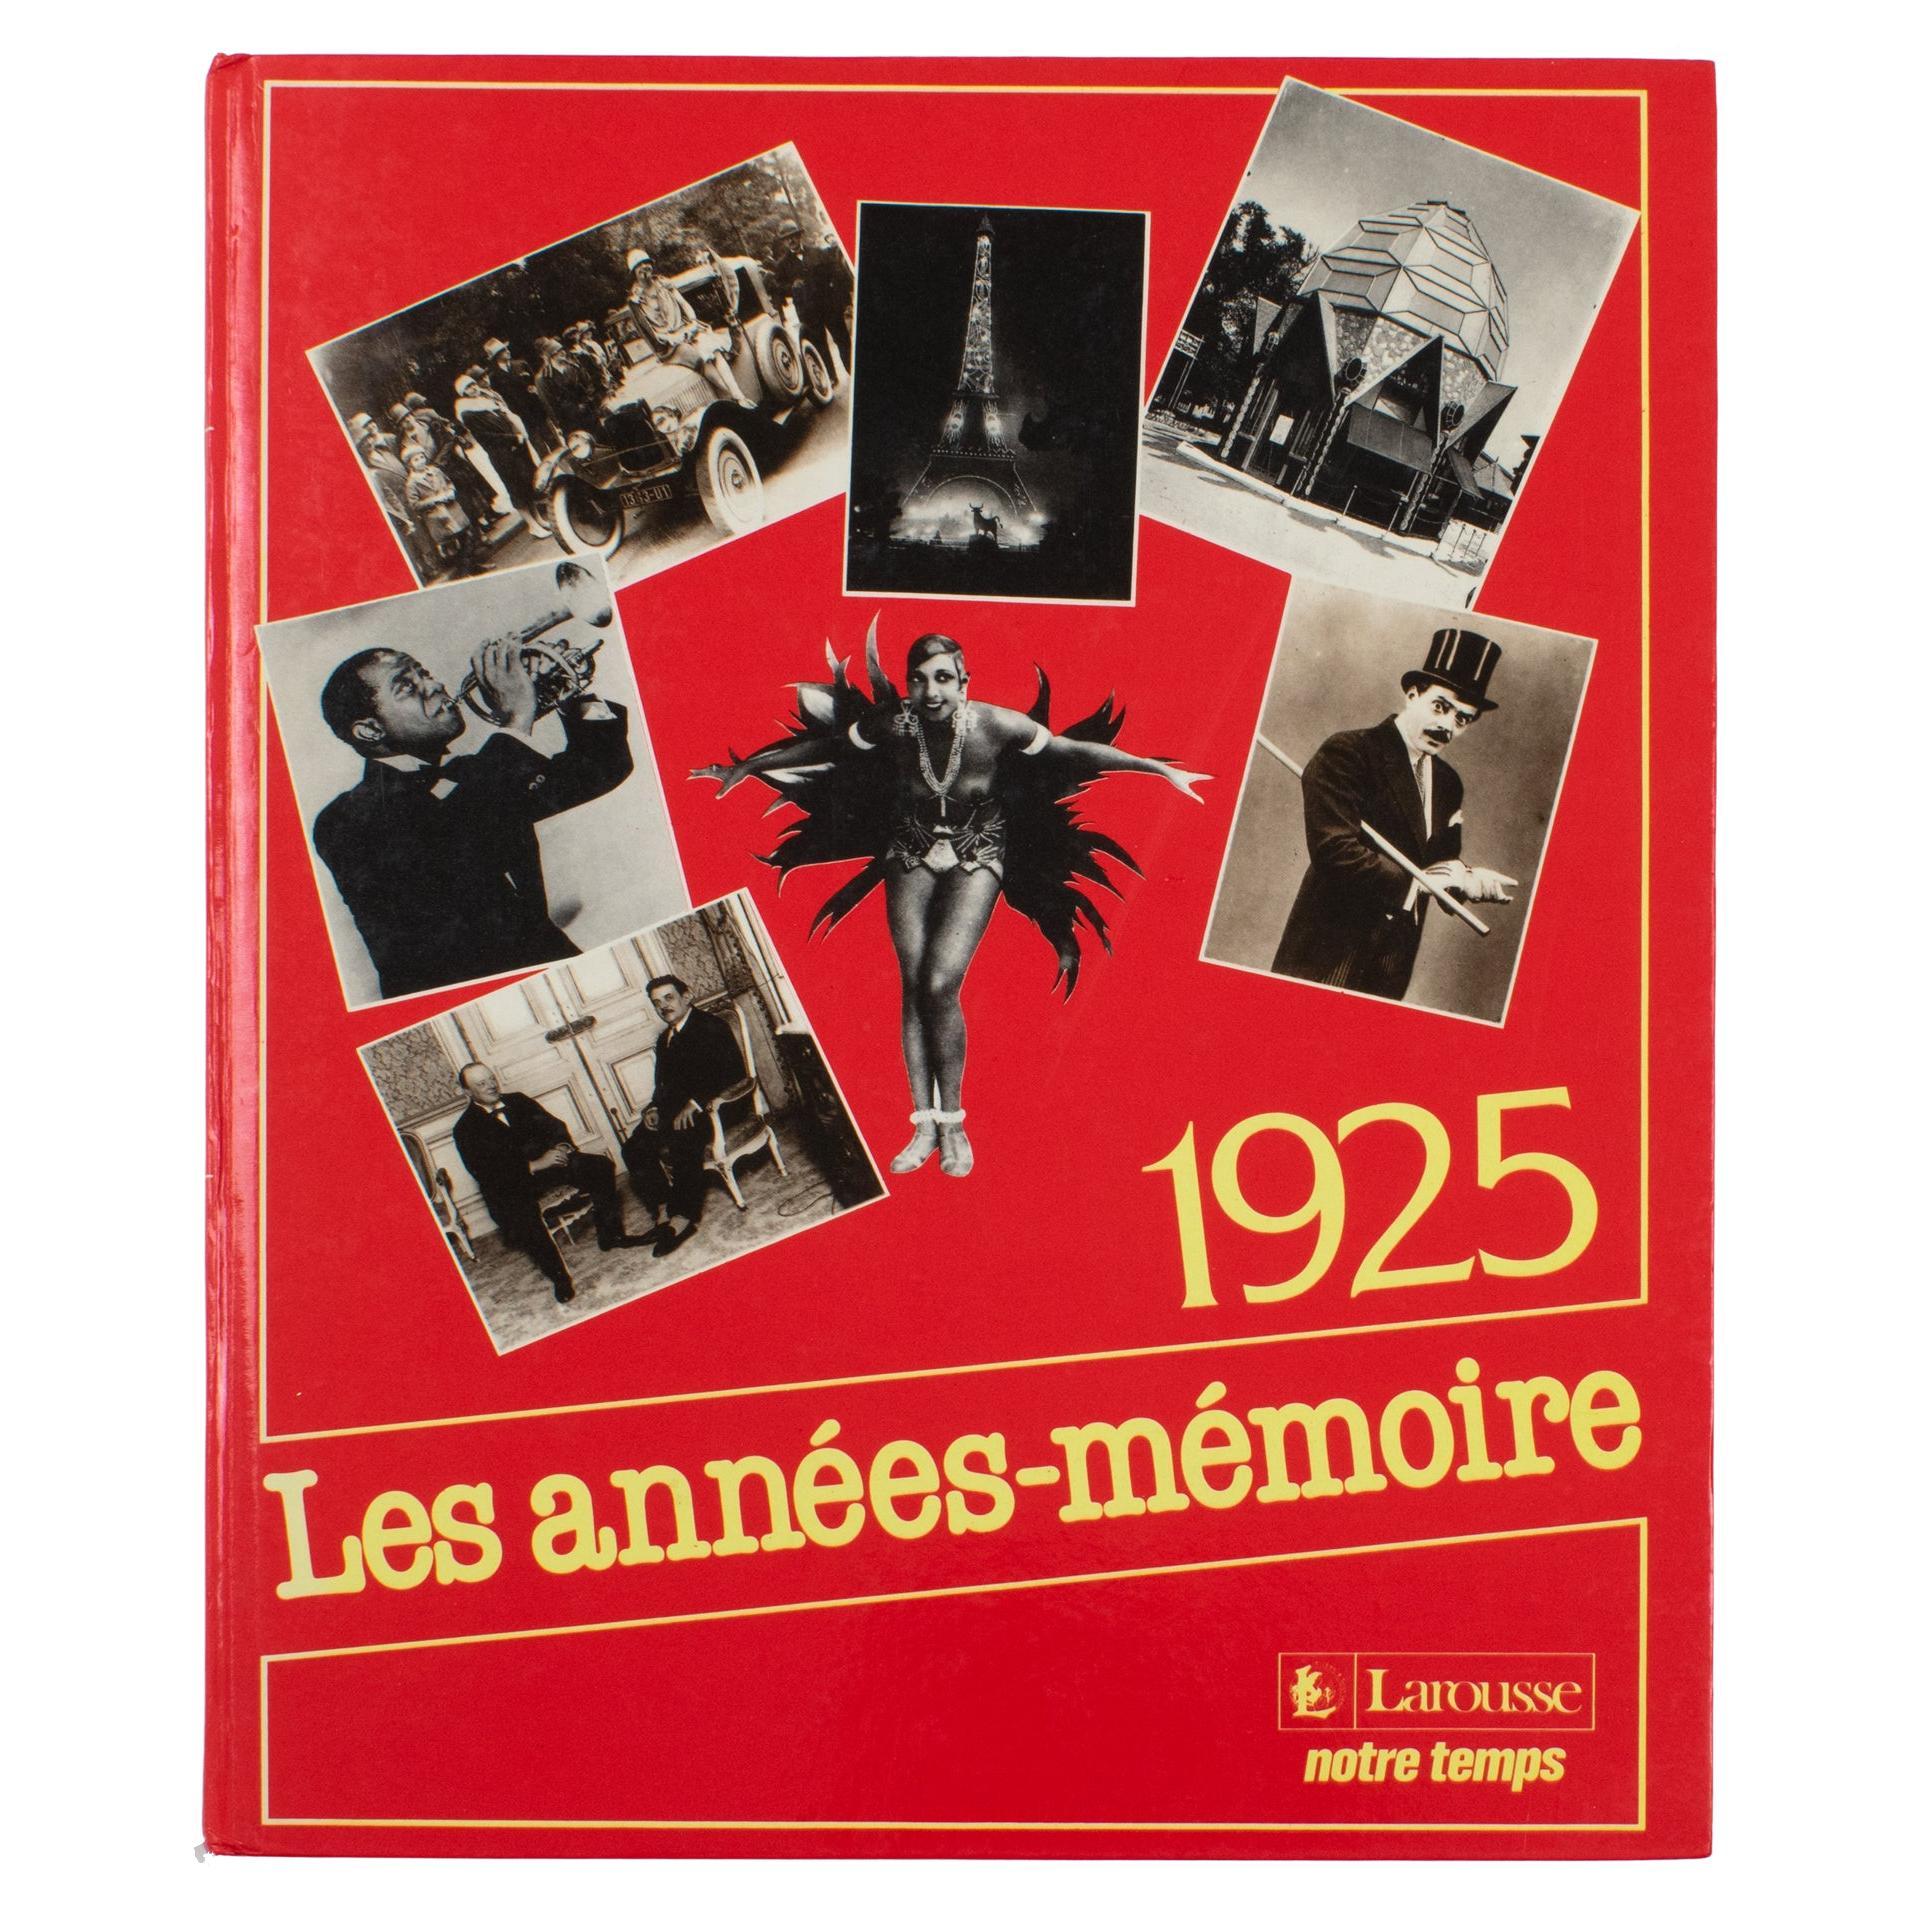 1925 The Memory Years, Französisches Buch von Editions Larousse, 1988